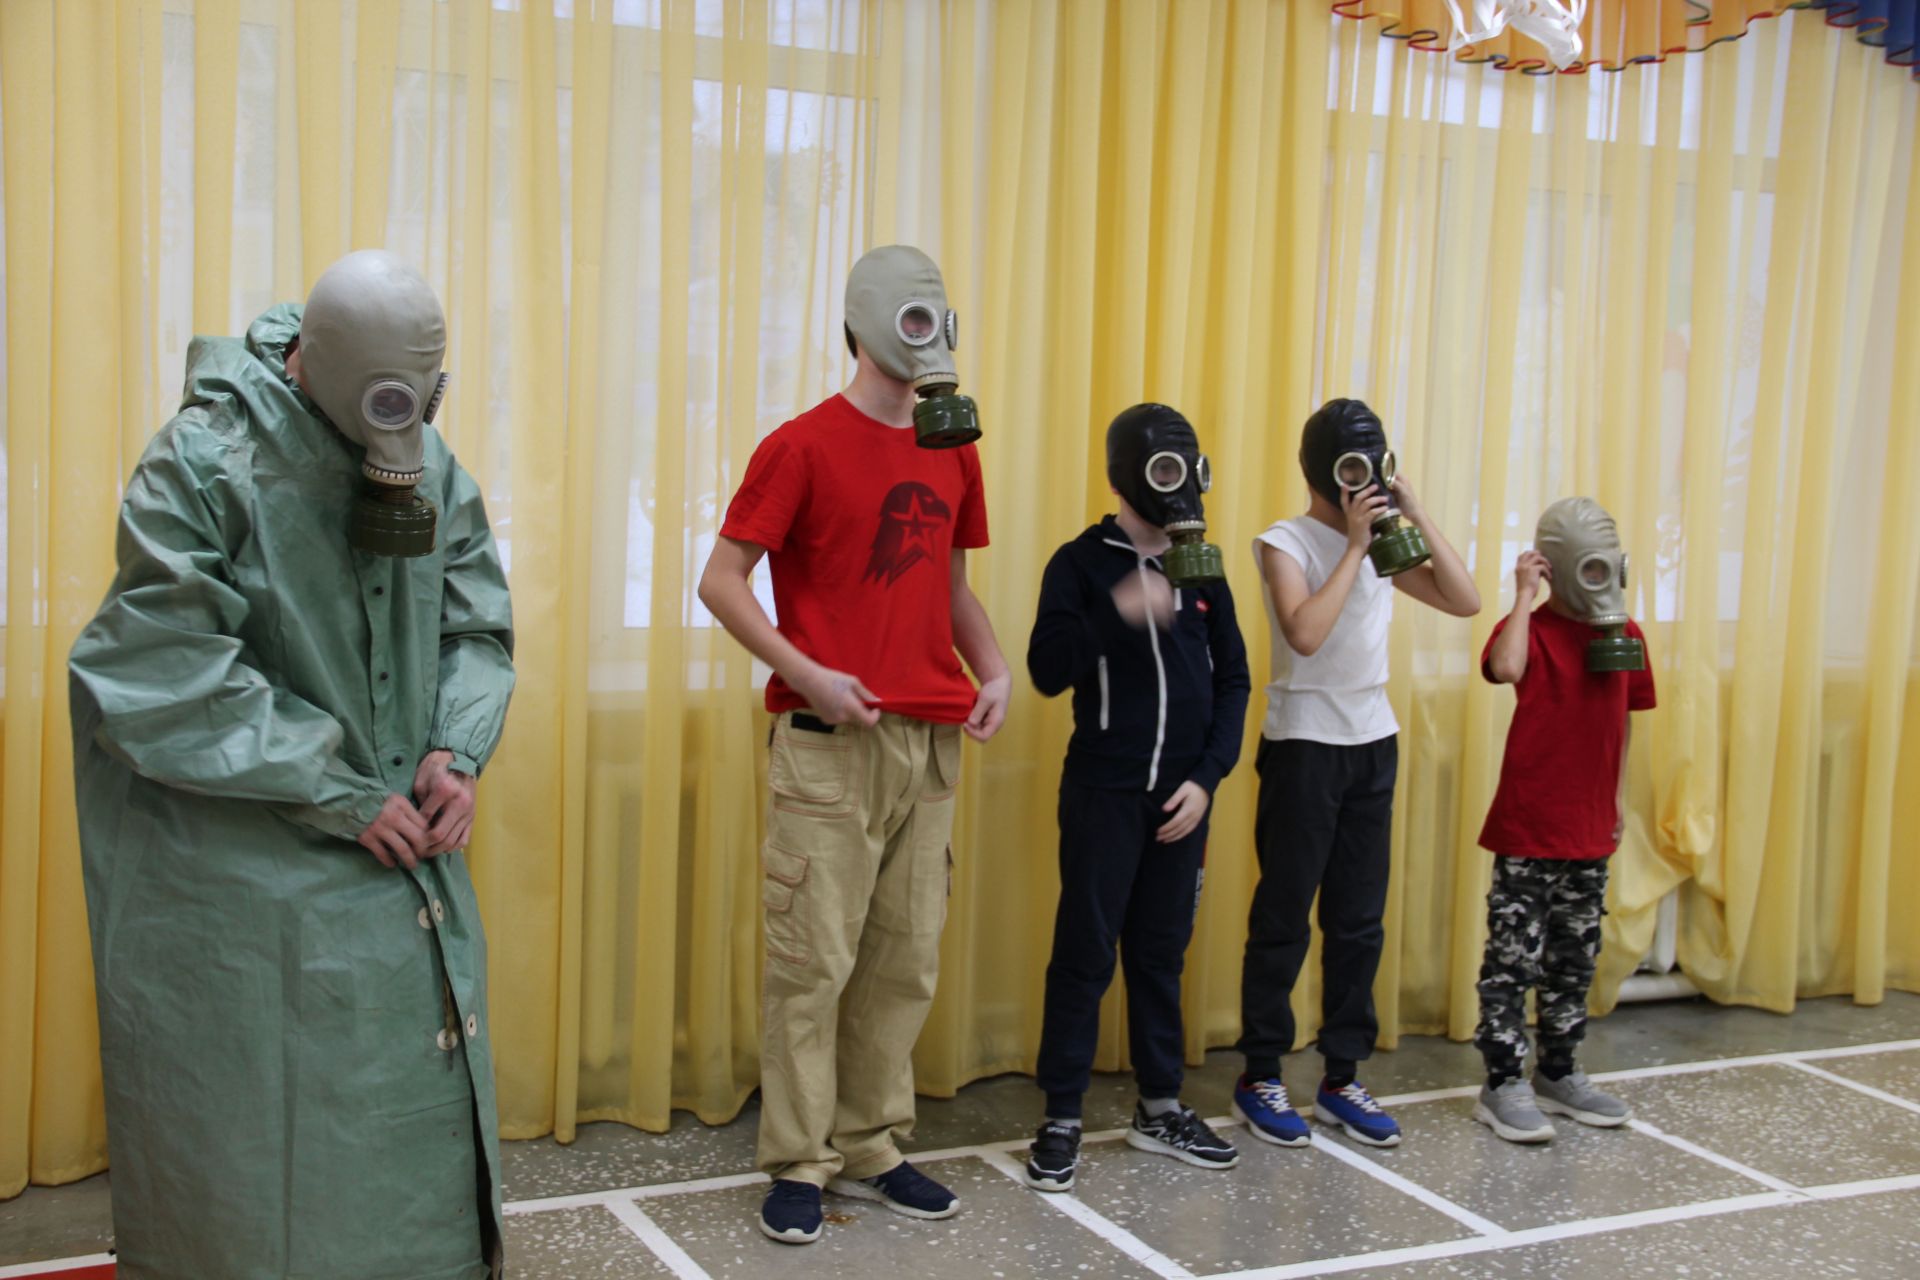 Дети из заинской школы делают телесюжеты, ставят спектакли, учатся разговорному английскому языку